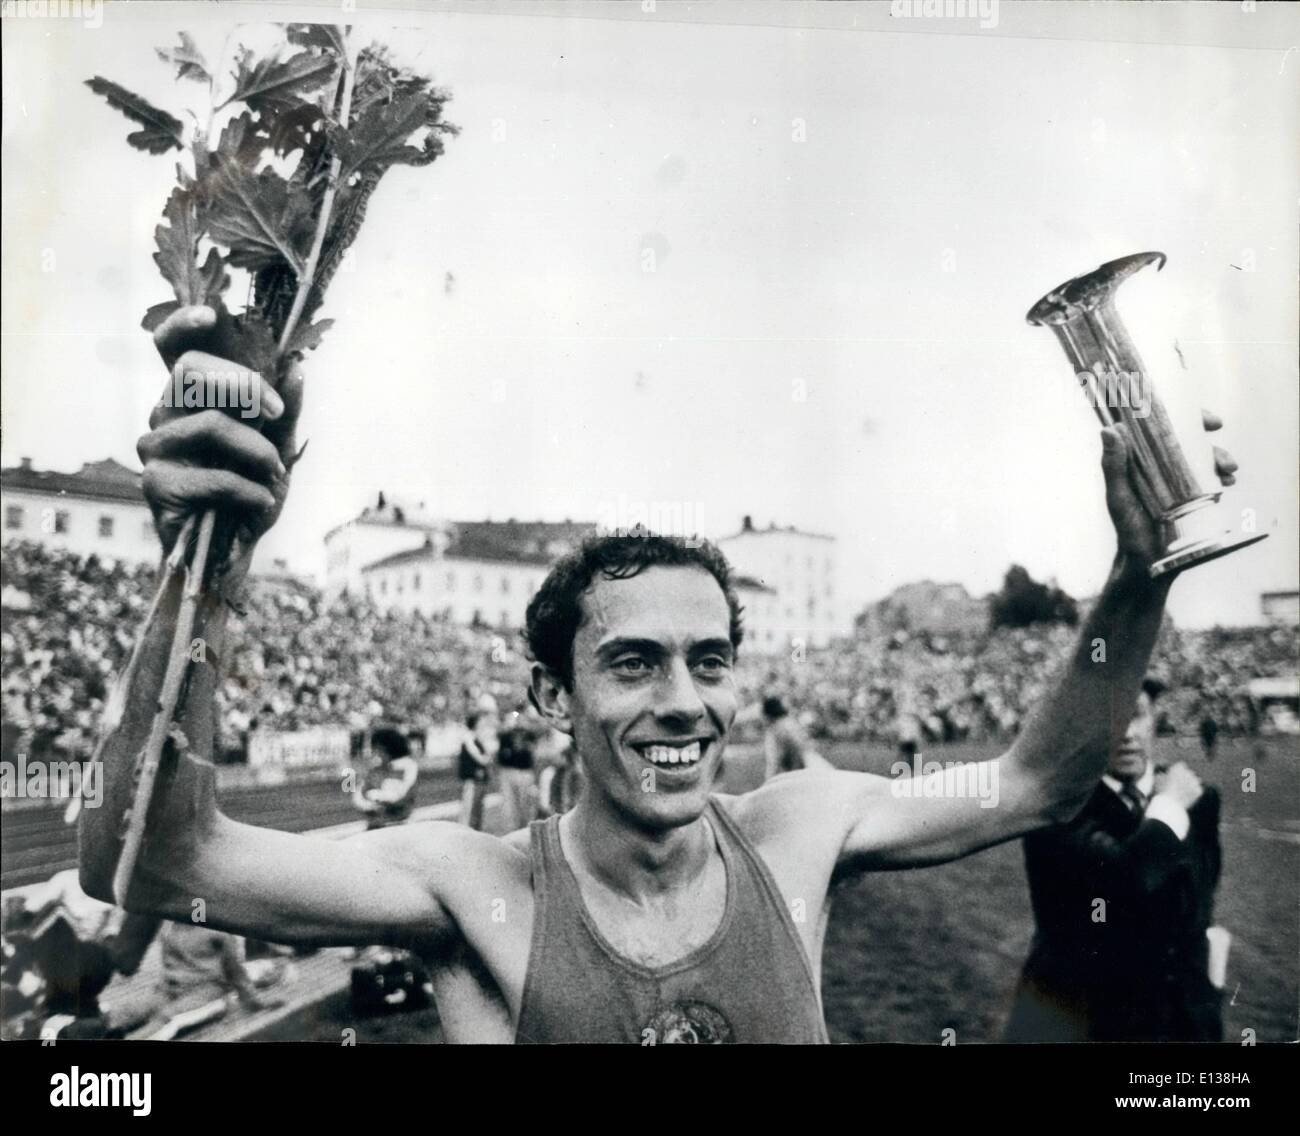 Febbraio 29, 2012 - luglio 1980 Steve Ovett rompe il record mondiale per il miglio in Oslo Ã¢â'¬â€oe nel Bislett Stadium di Oslo, British Foto Stock